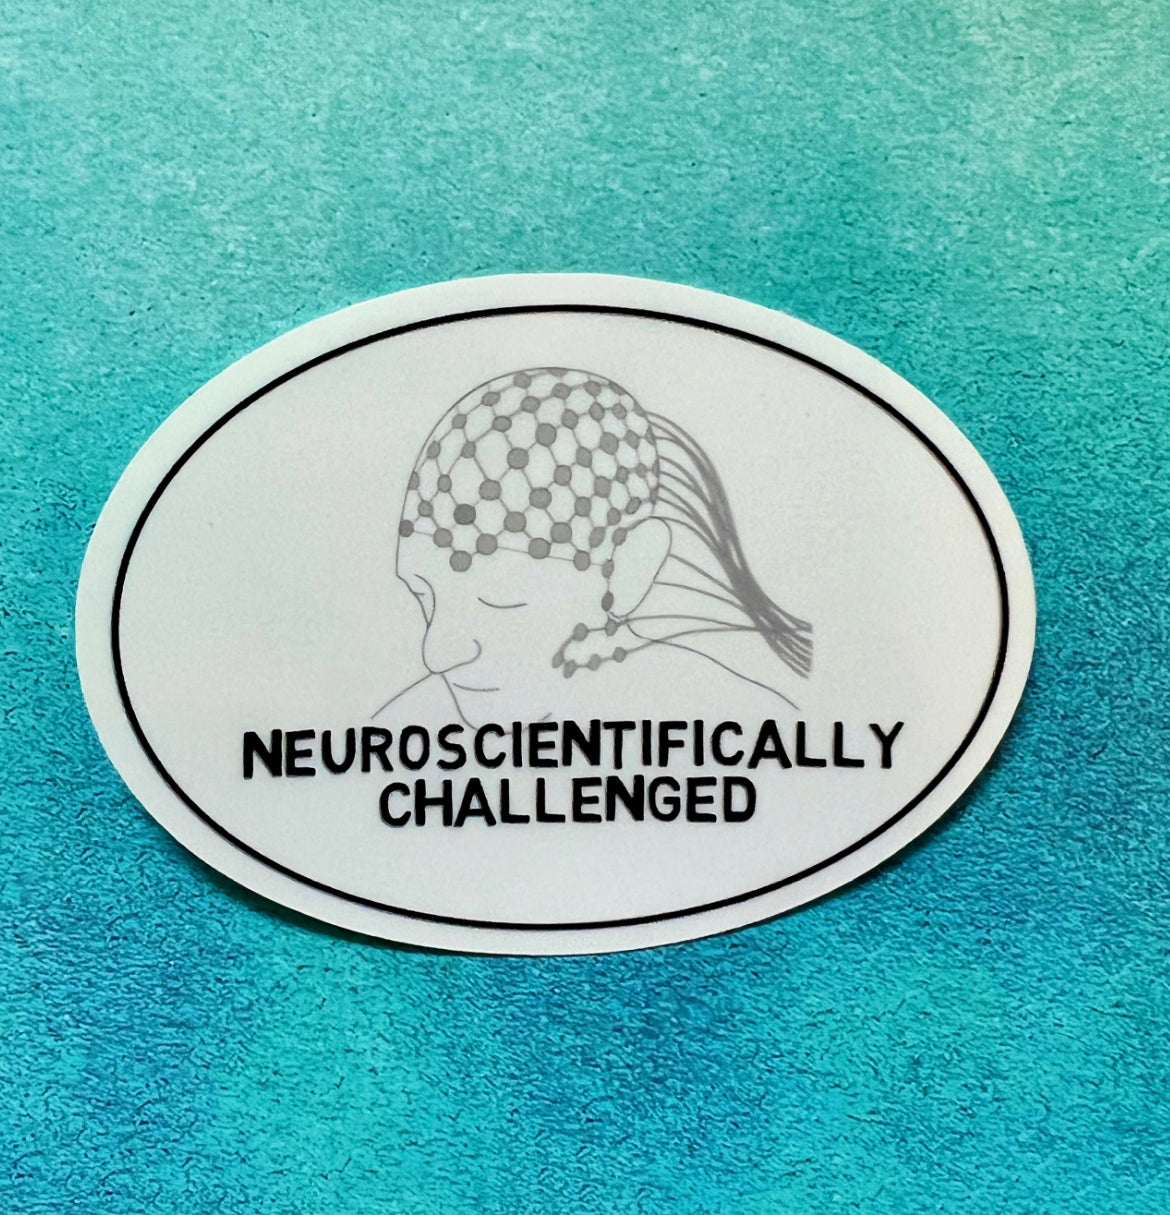 Neuroscientifically Challenged logo sticker